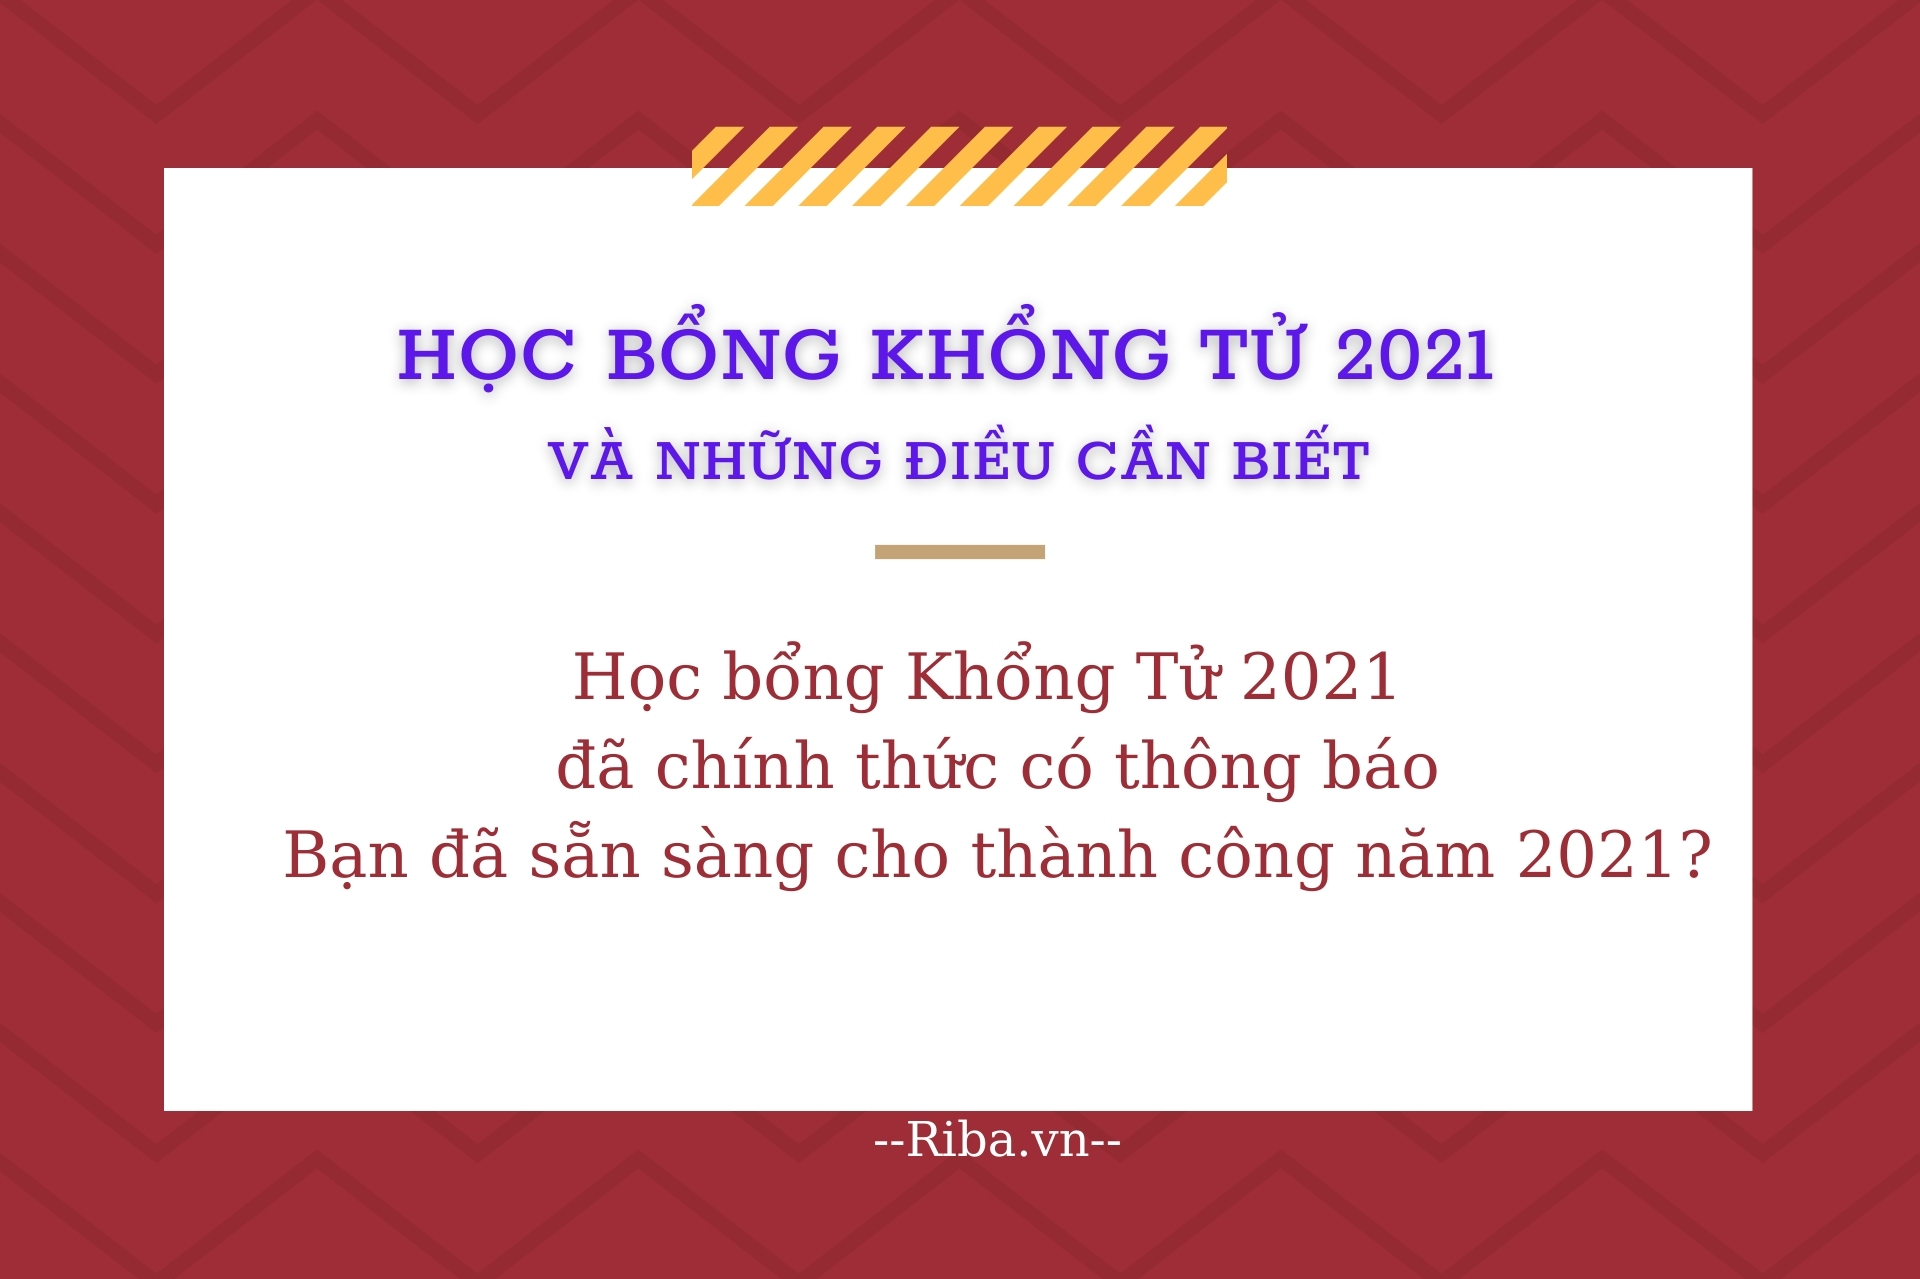 Hoc bong Khong Tu 2021 co gi dac biet 1